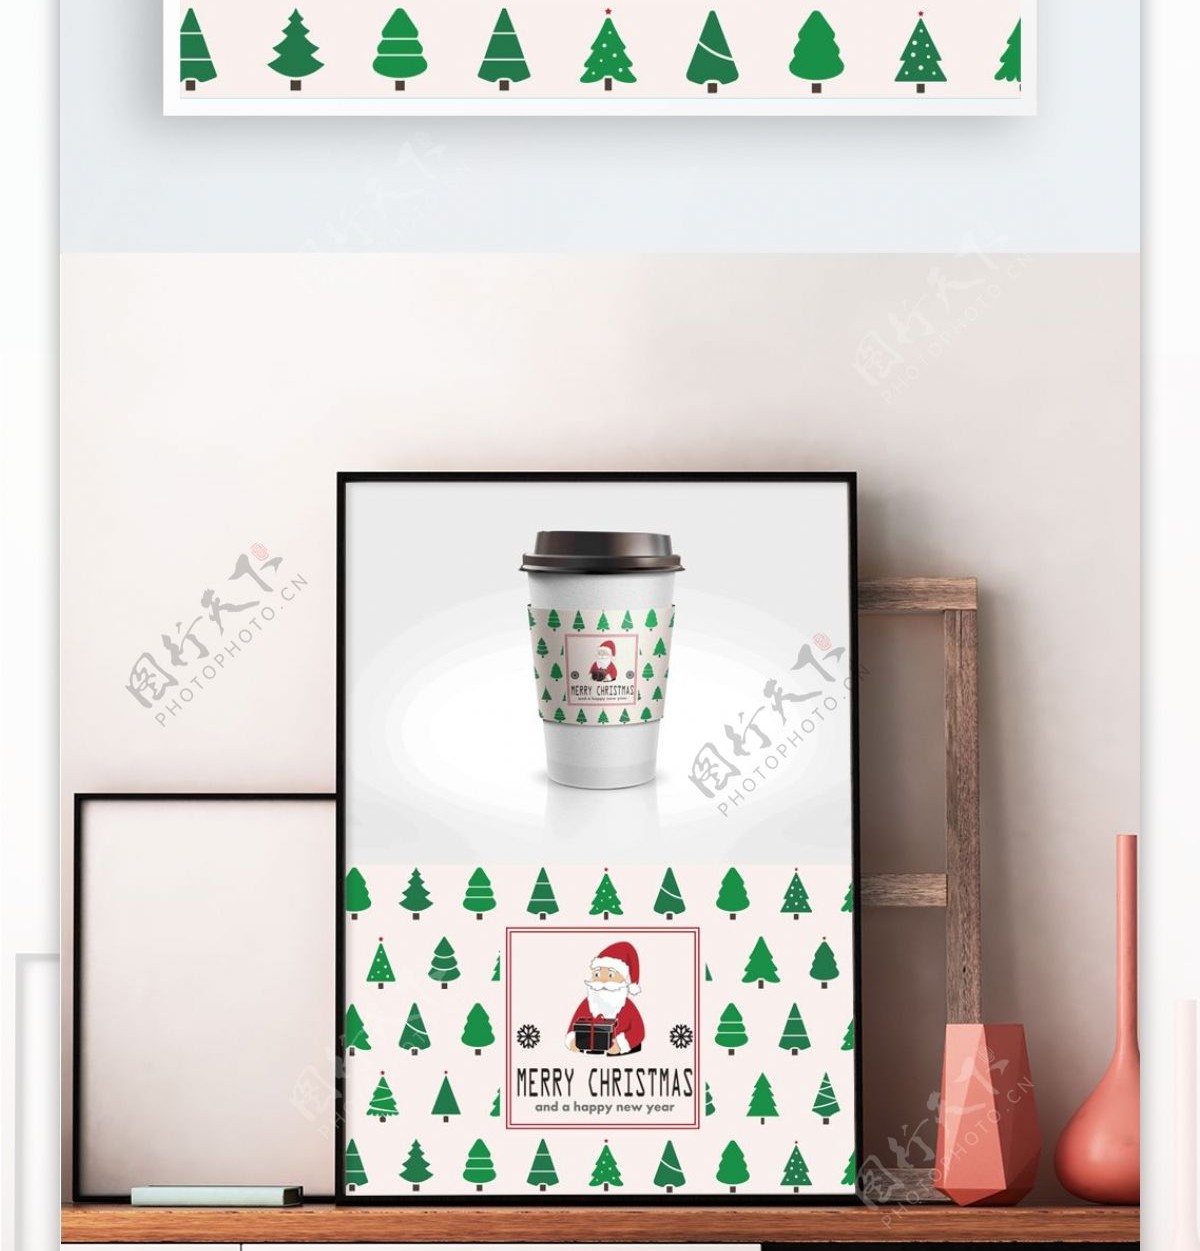 绿色简约圣诞树节日包装咖啡杯套设计